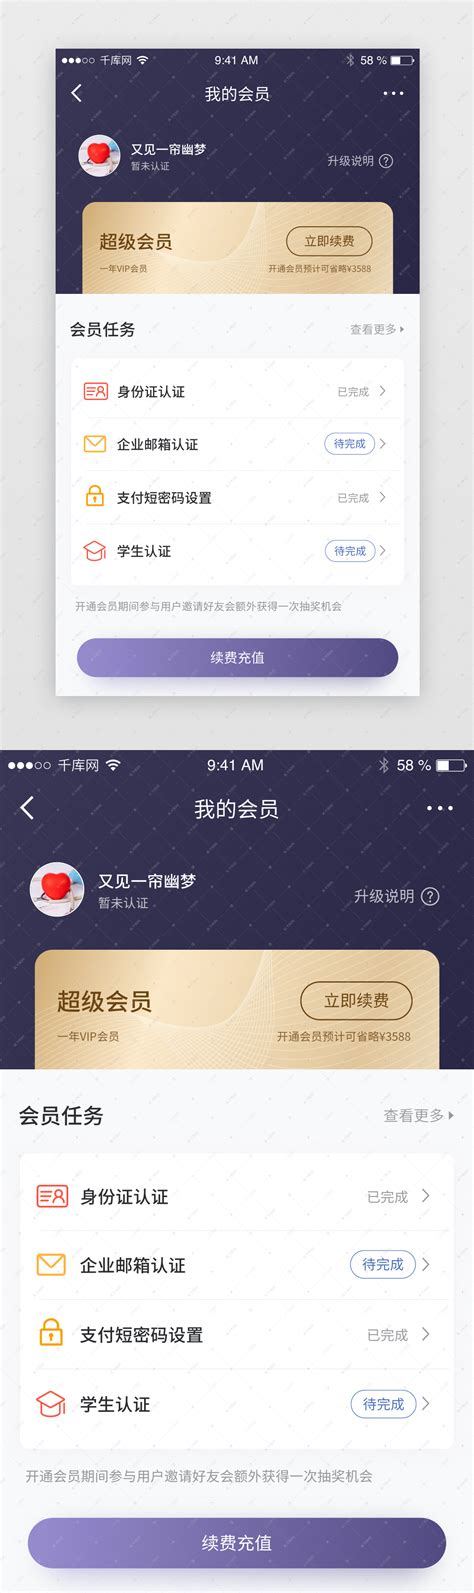 紫色高端VIP会员中心页app界面ui界面设计素材-千库网